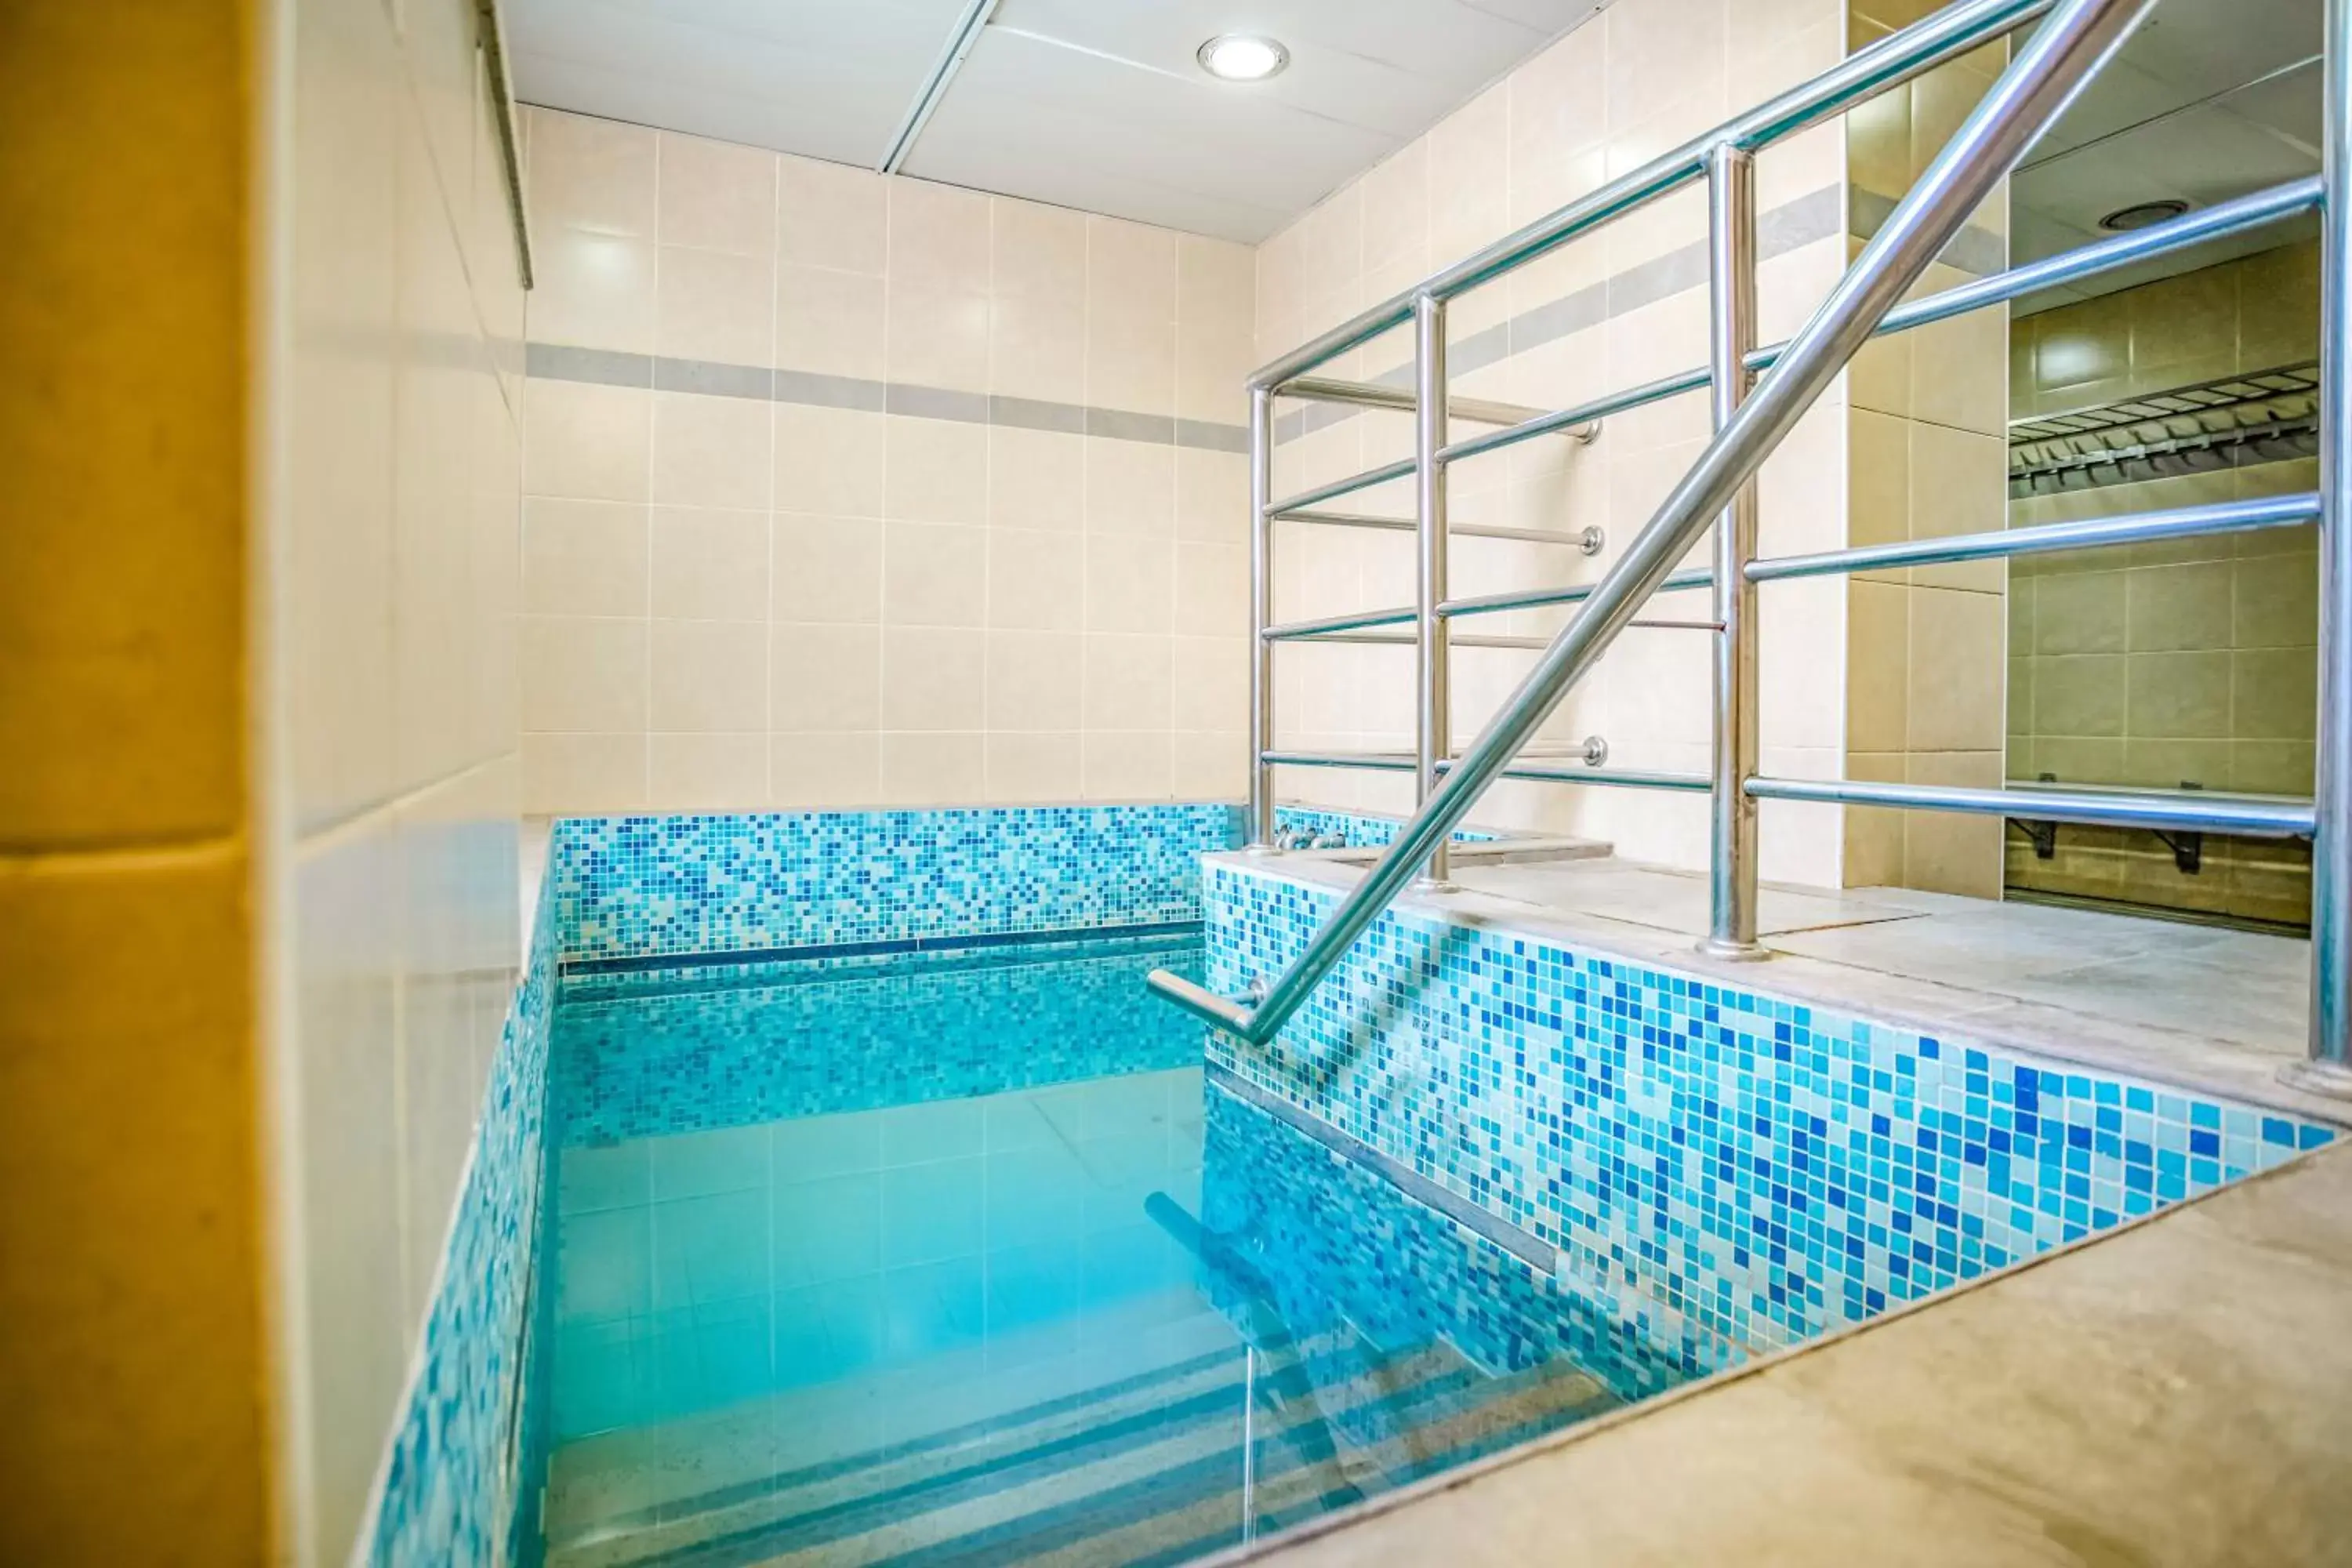 Public Bath, Swimming Pool in Jerusalem Gate Hotel